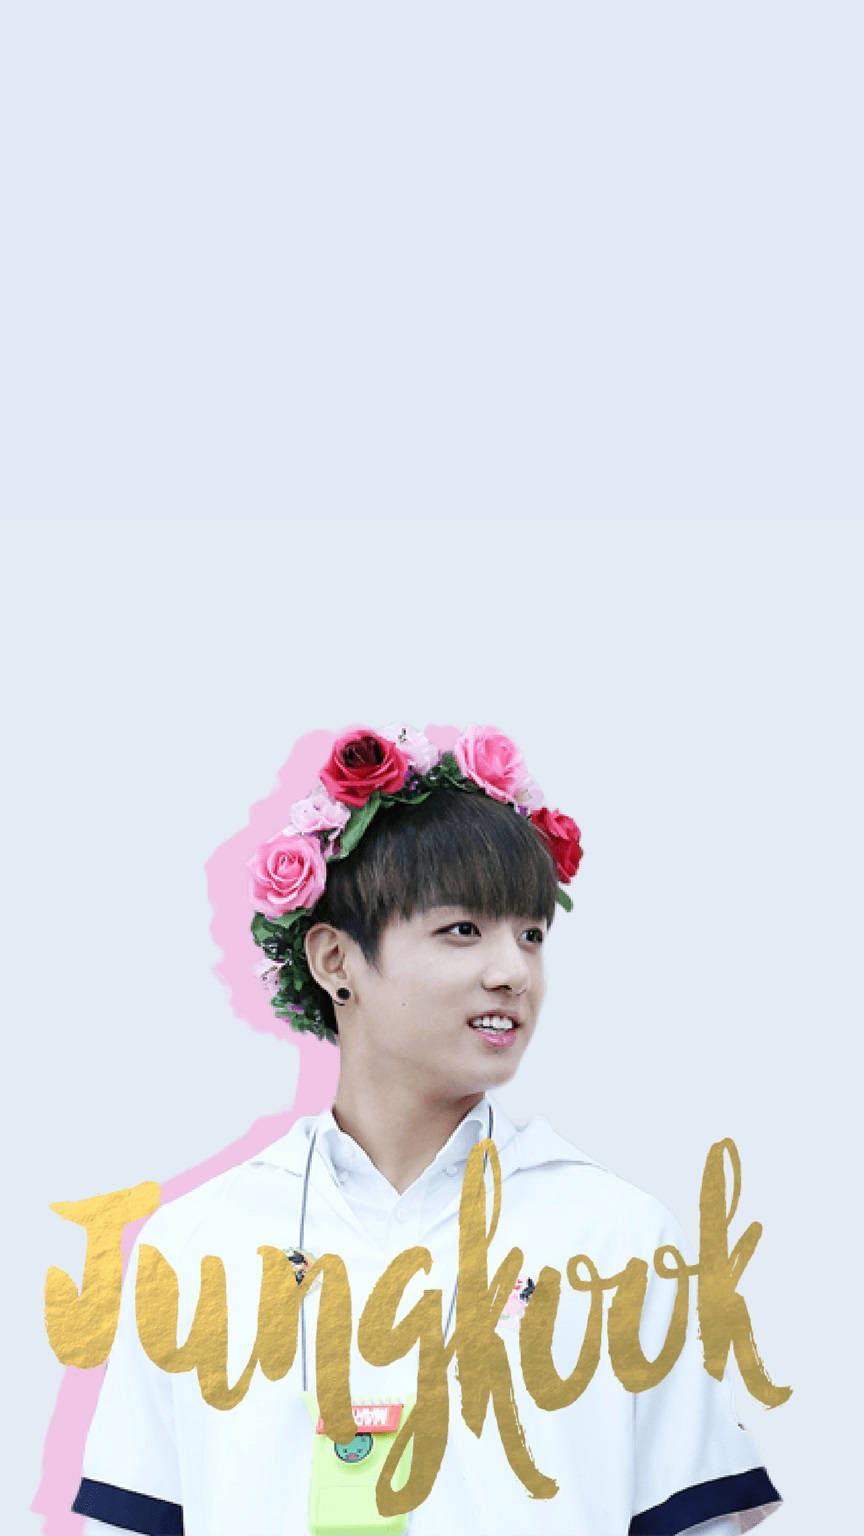 Cute Bts Jungkook In Pink Flower Crown